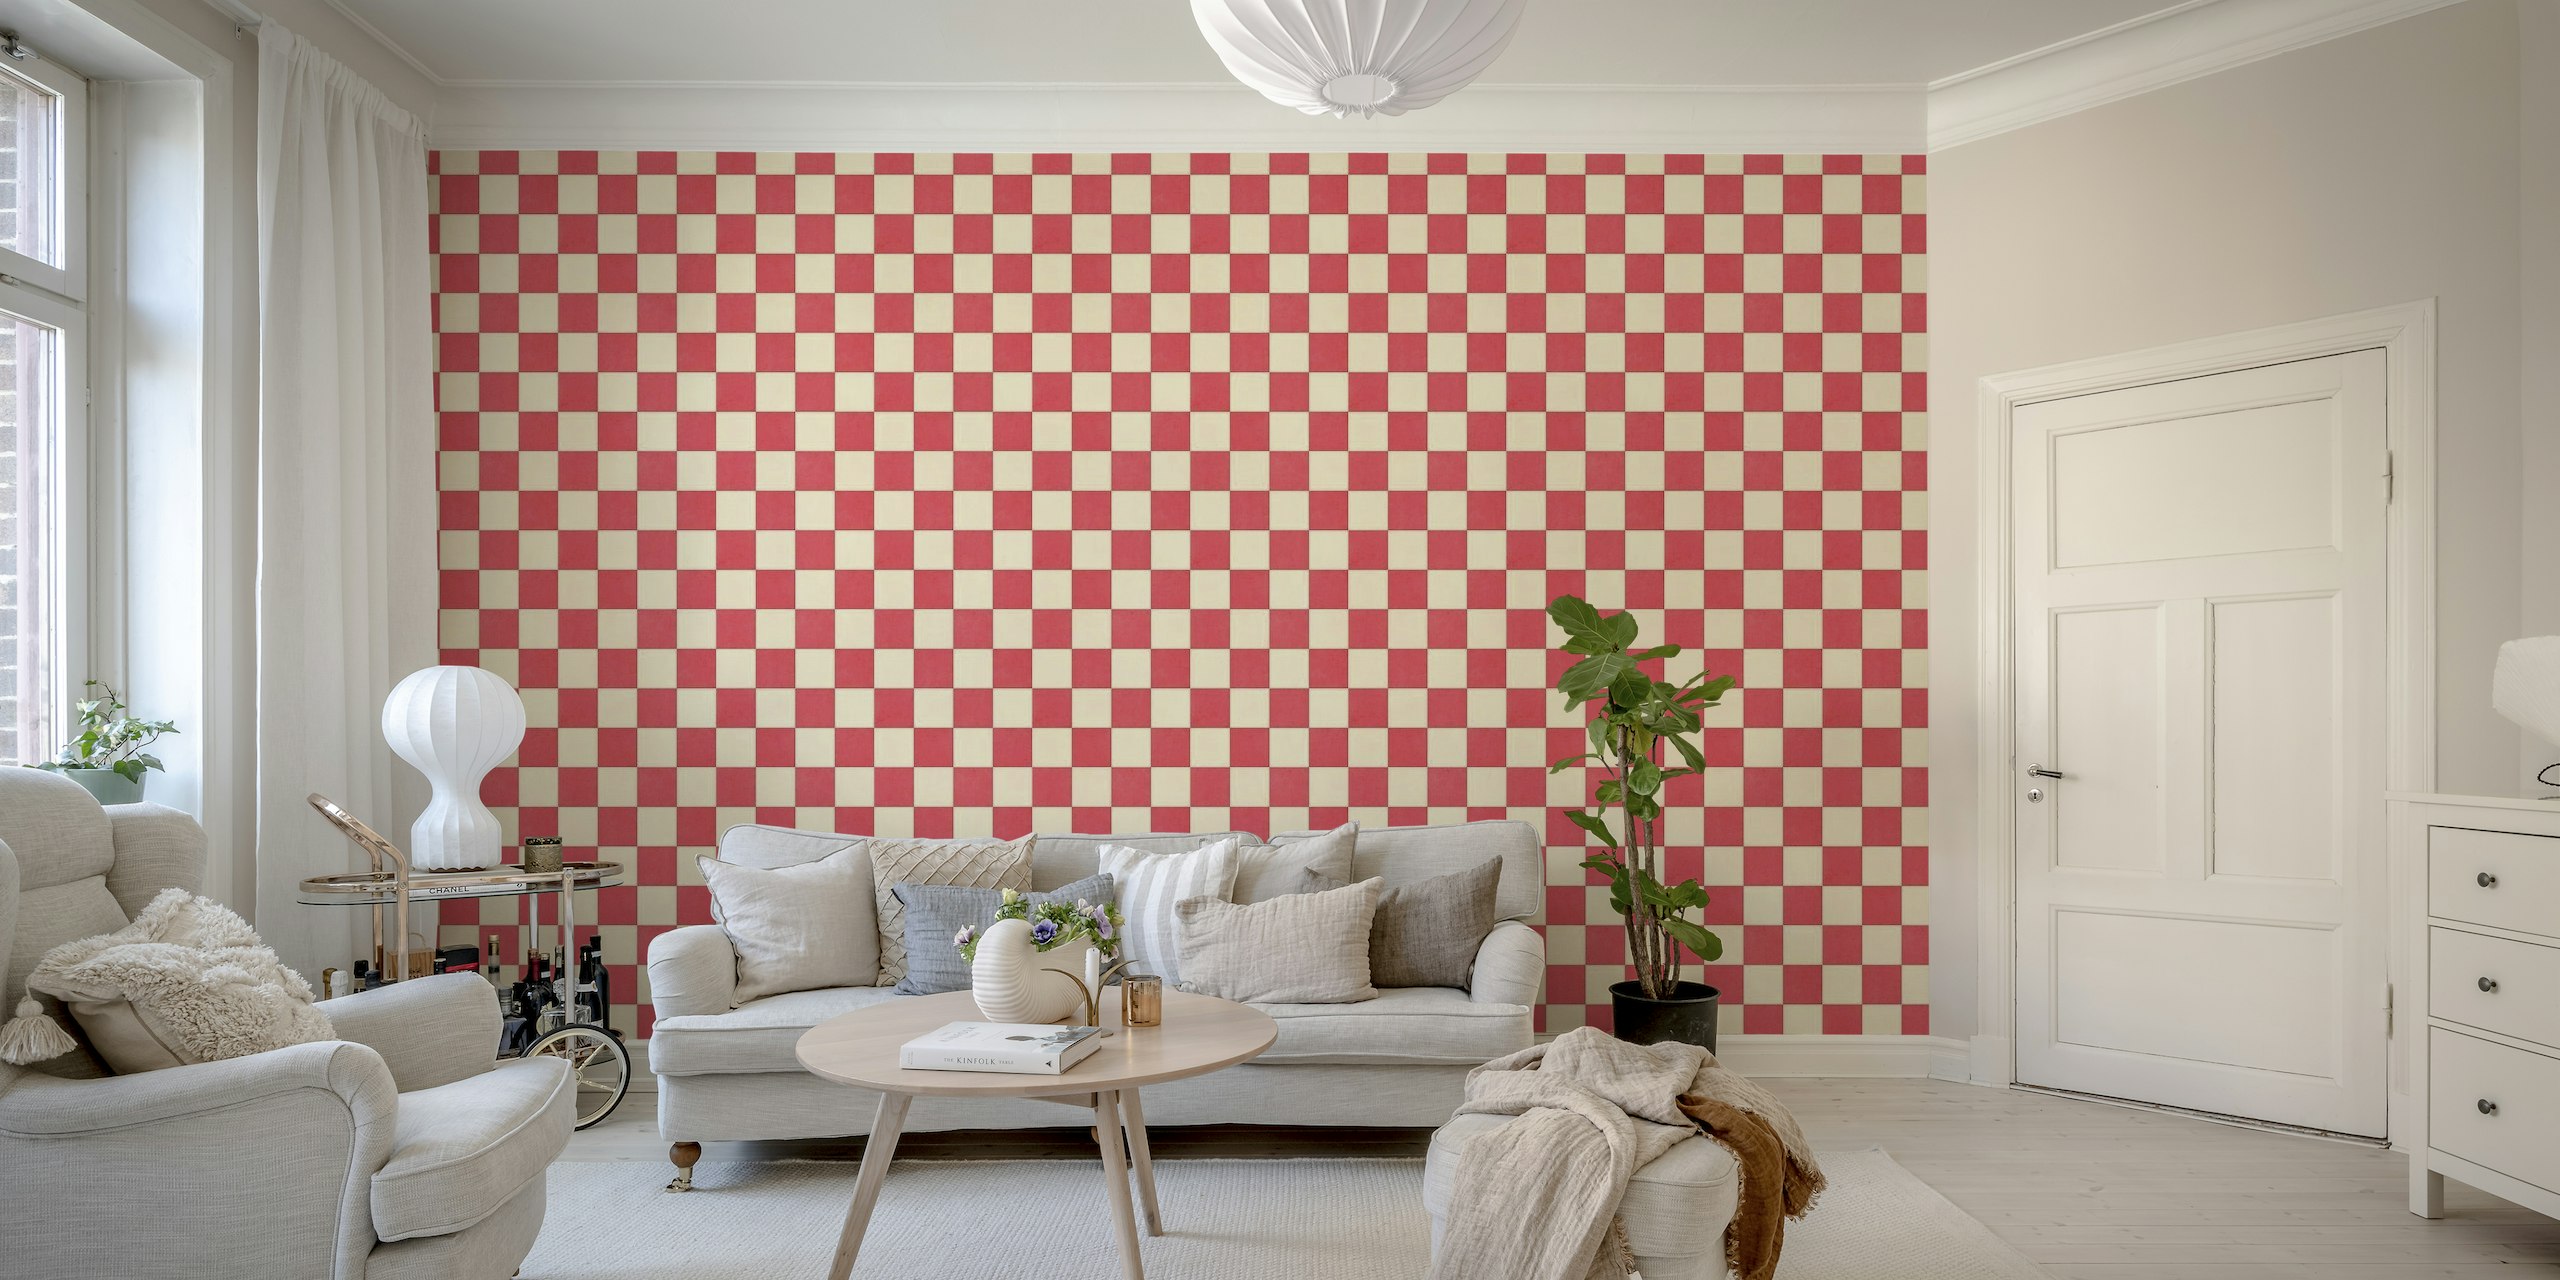 TILES 012 E - Checkerboard wallpaper